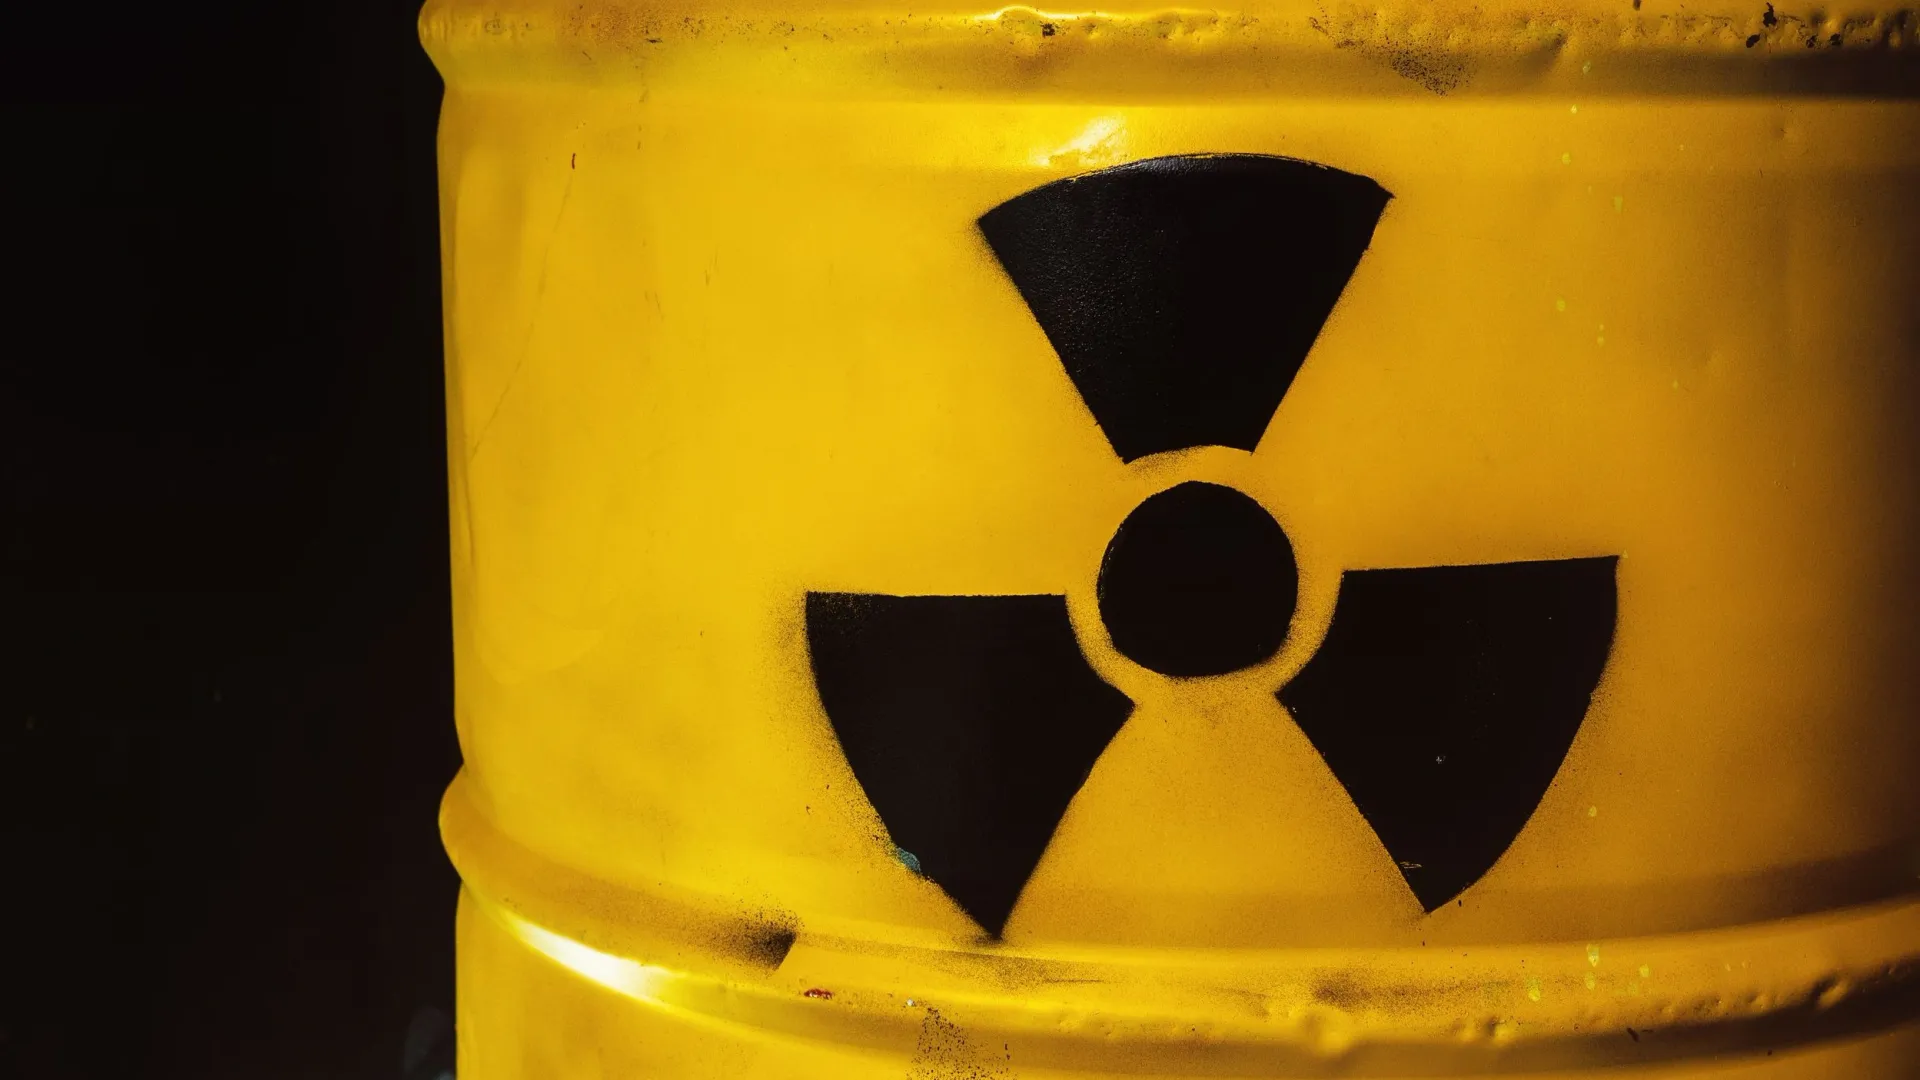 Желтый может сигнализировать об опасности. Фото: sonicbox/Shutterstock/Fotodom